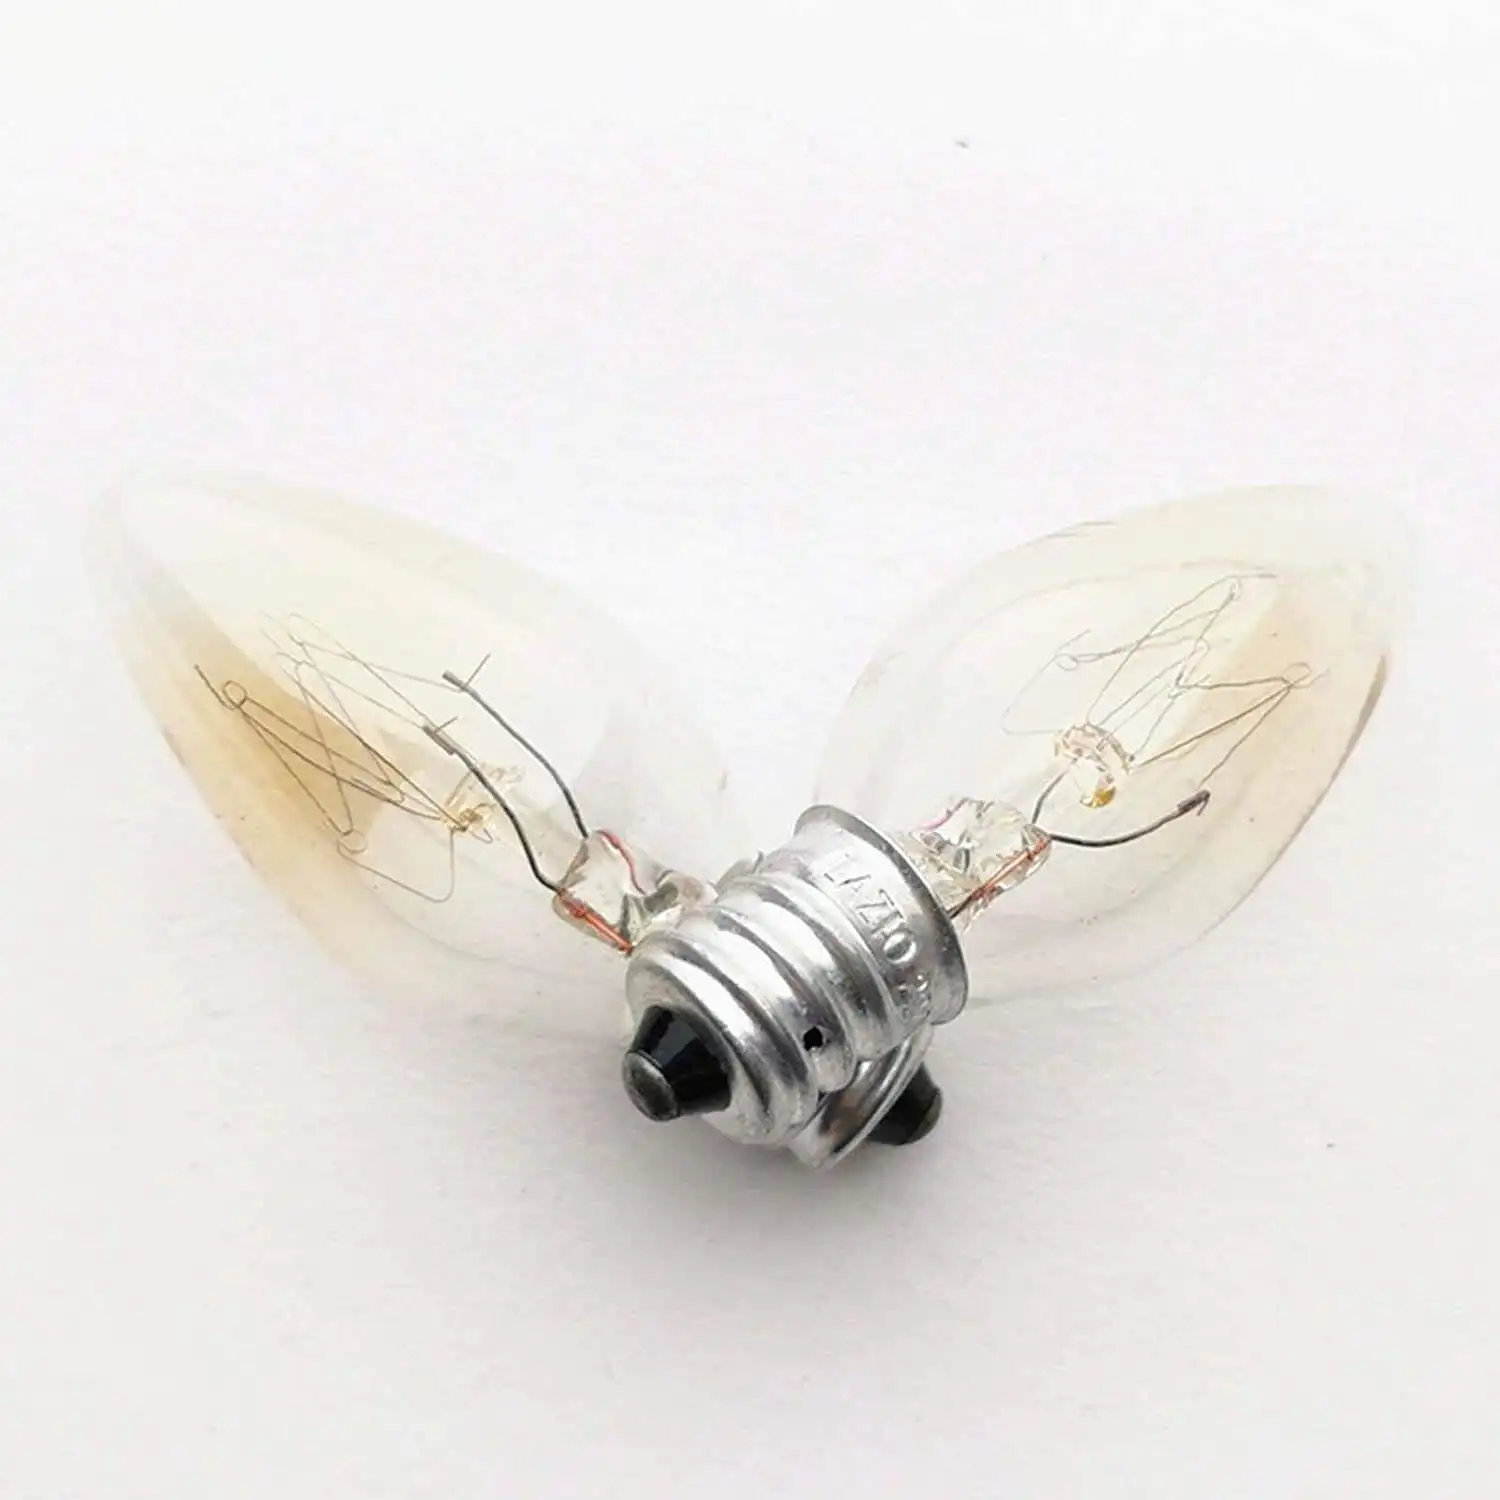 Night Light E12 E14 Small Edison Screw 110V to 240V Replacement Spare Bulb for Salt Lamp